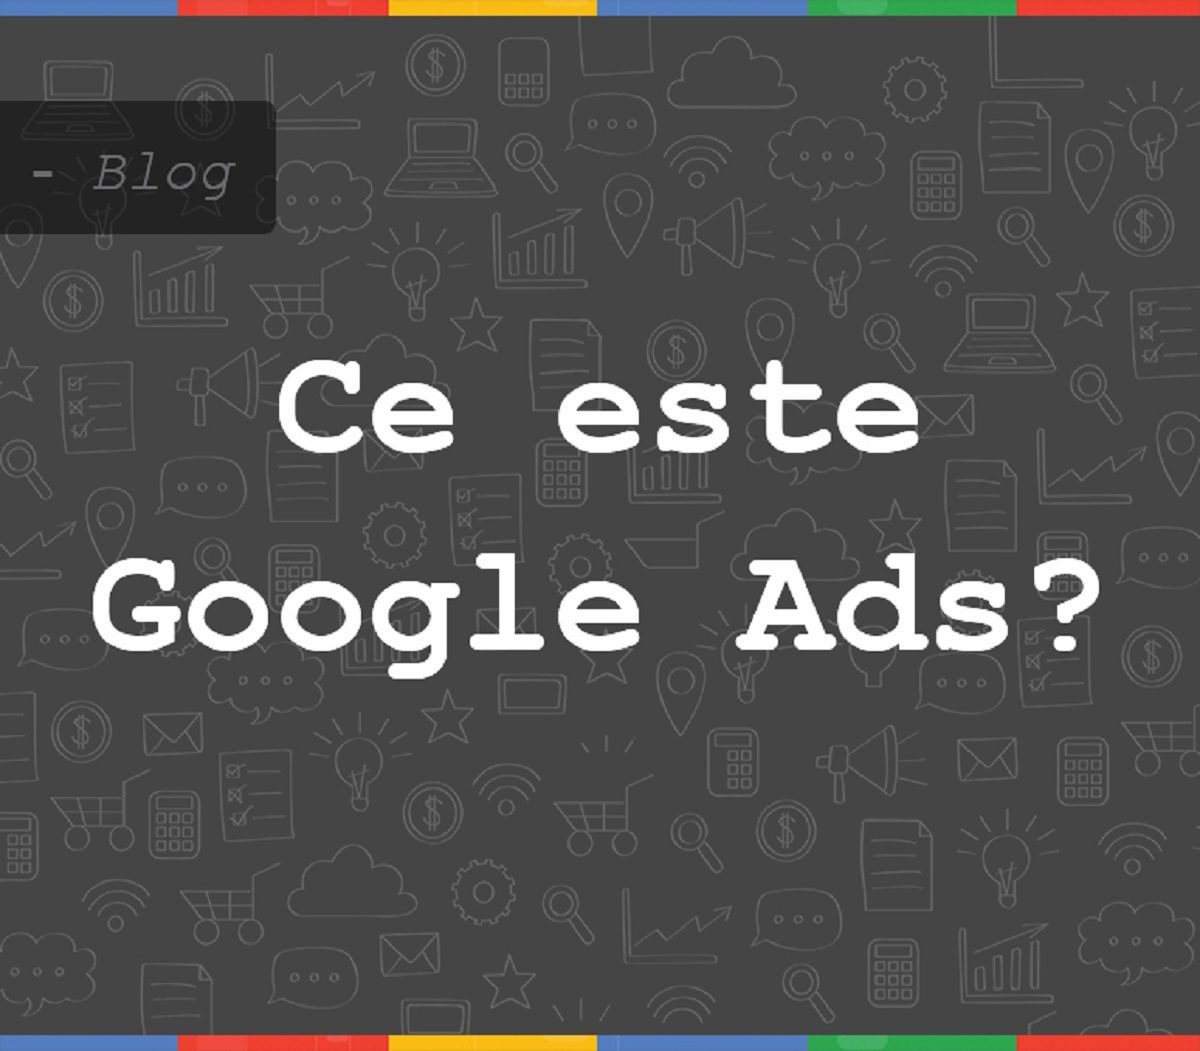 Ce este Google Ads?